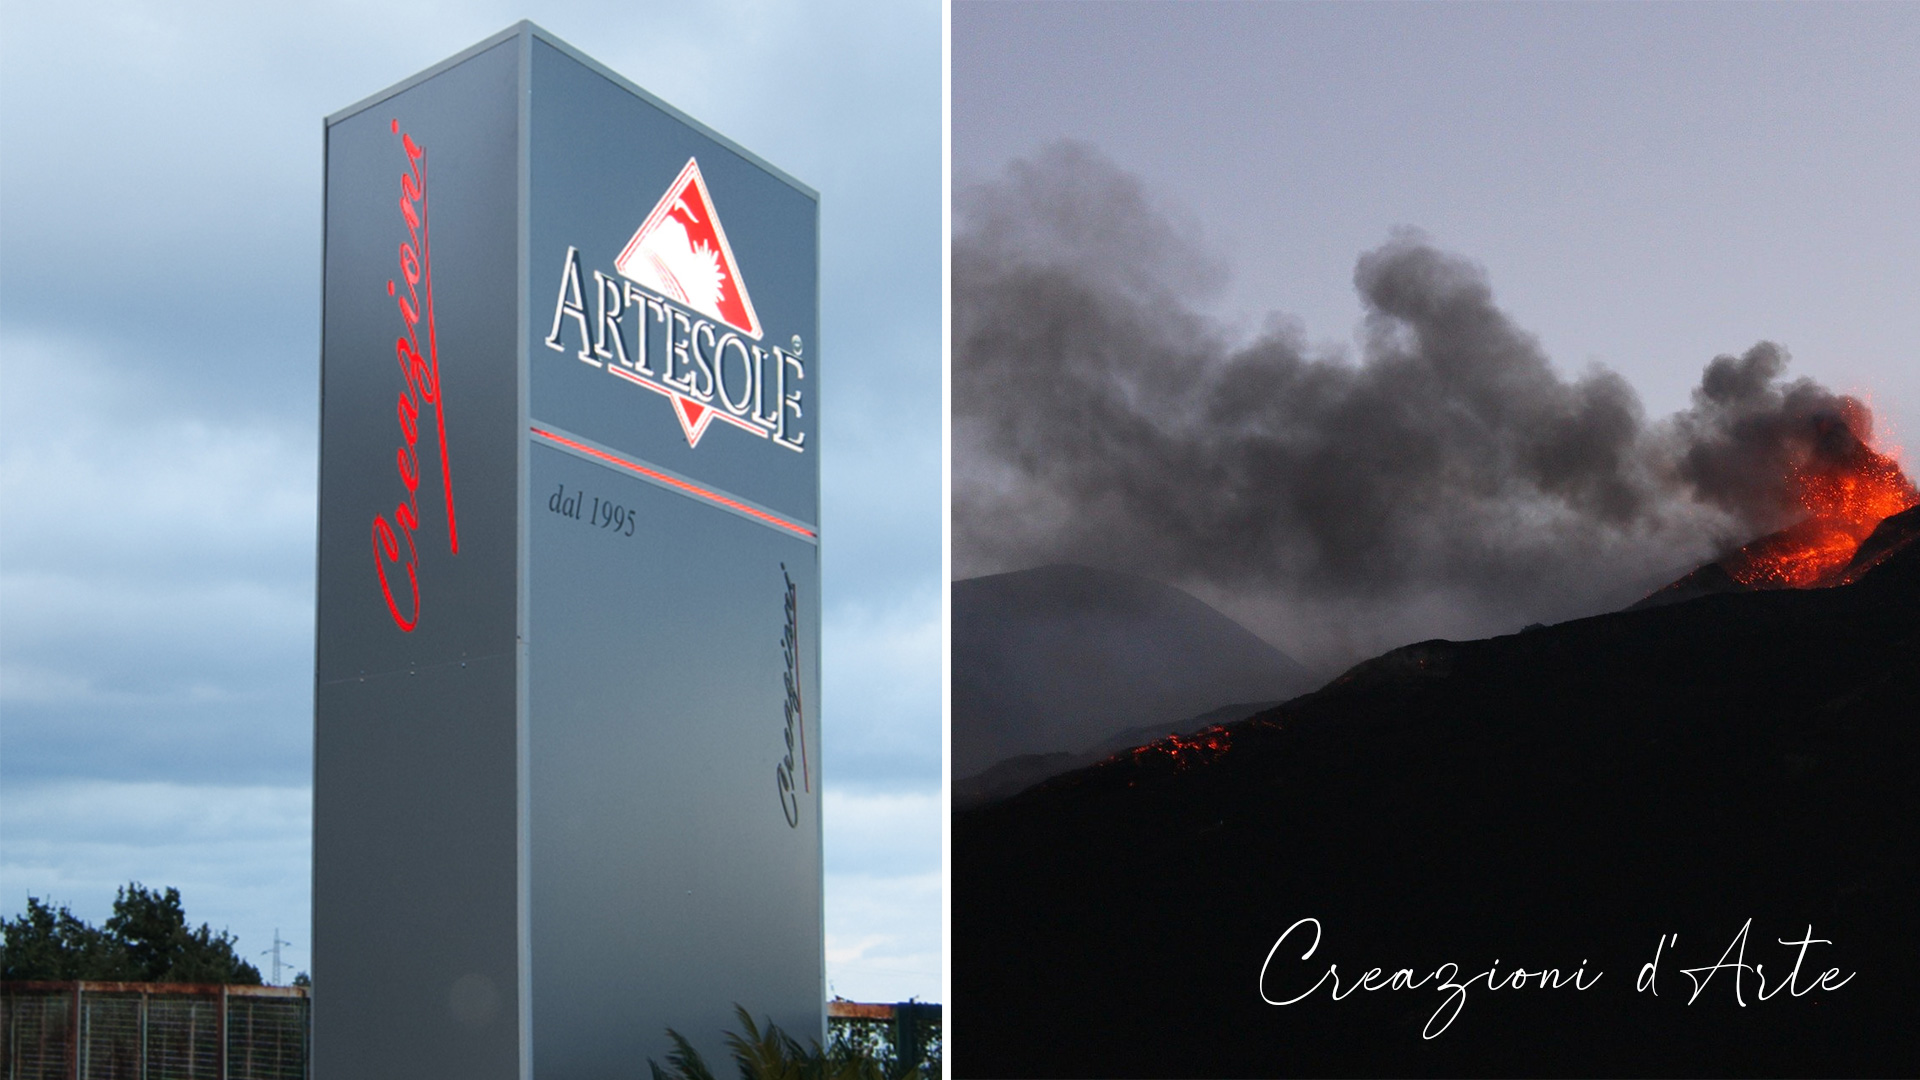 Artesole laboratory located in Giarre, artistic processing of lava stone and ceramics